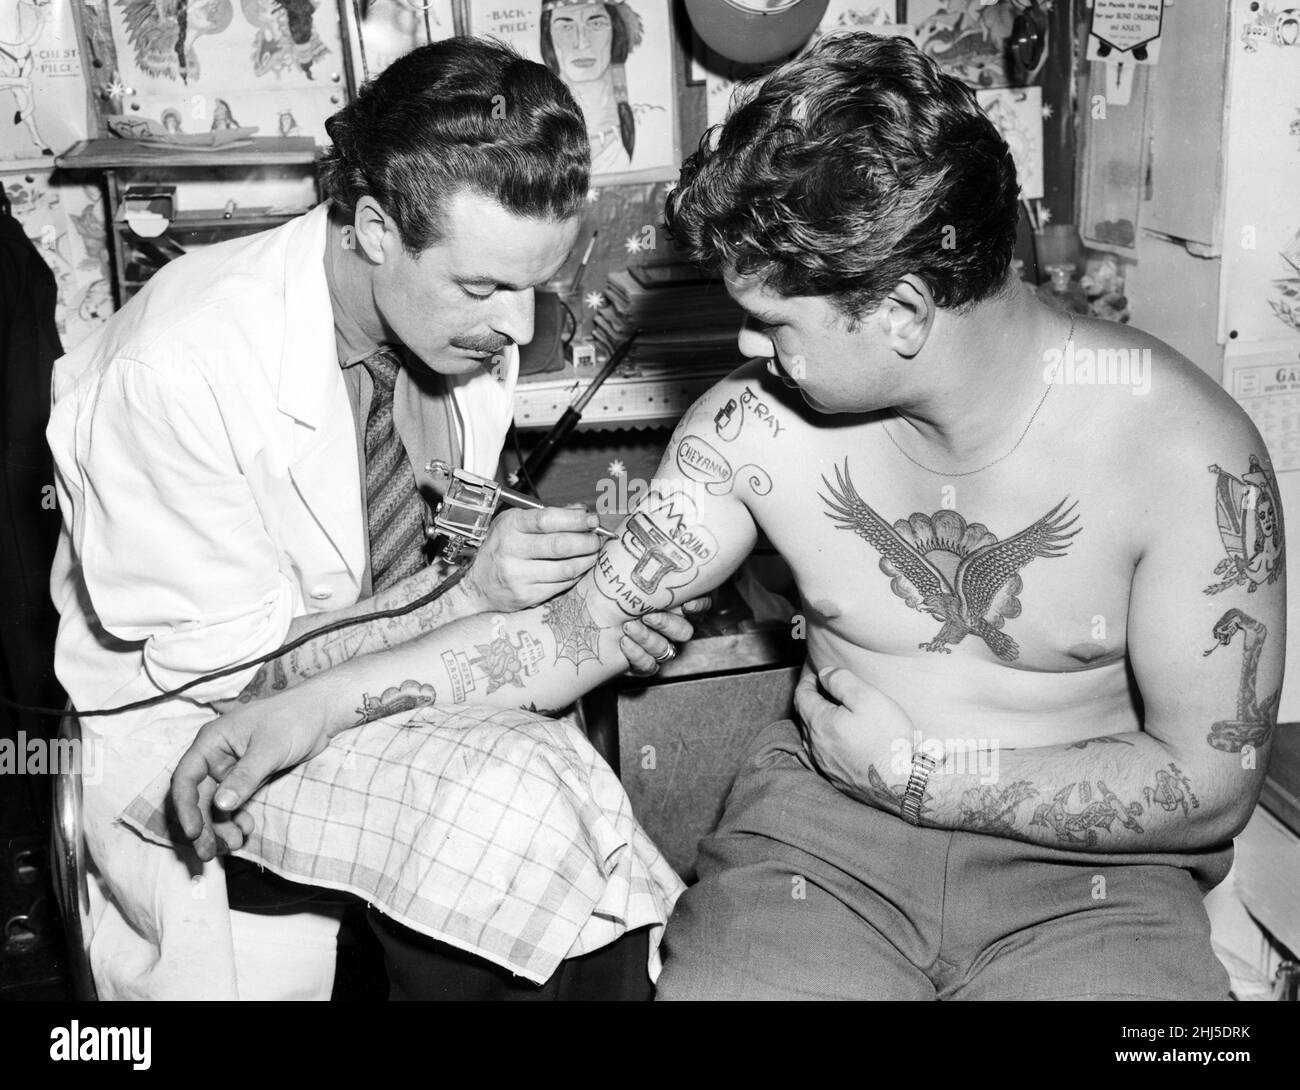 Tatoueur de Blackpool Harry lever tatouages un client.La nouvelle folie est pour les héros de la télévision - le lawman Cheyenne, Dan Mathews de la patrouille routière et Frank Ballinger de M Squad ont tous été populaires.29th juillet 1957. Banque D'Images